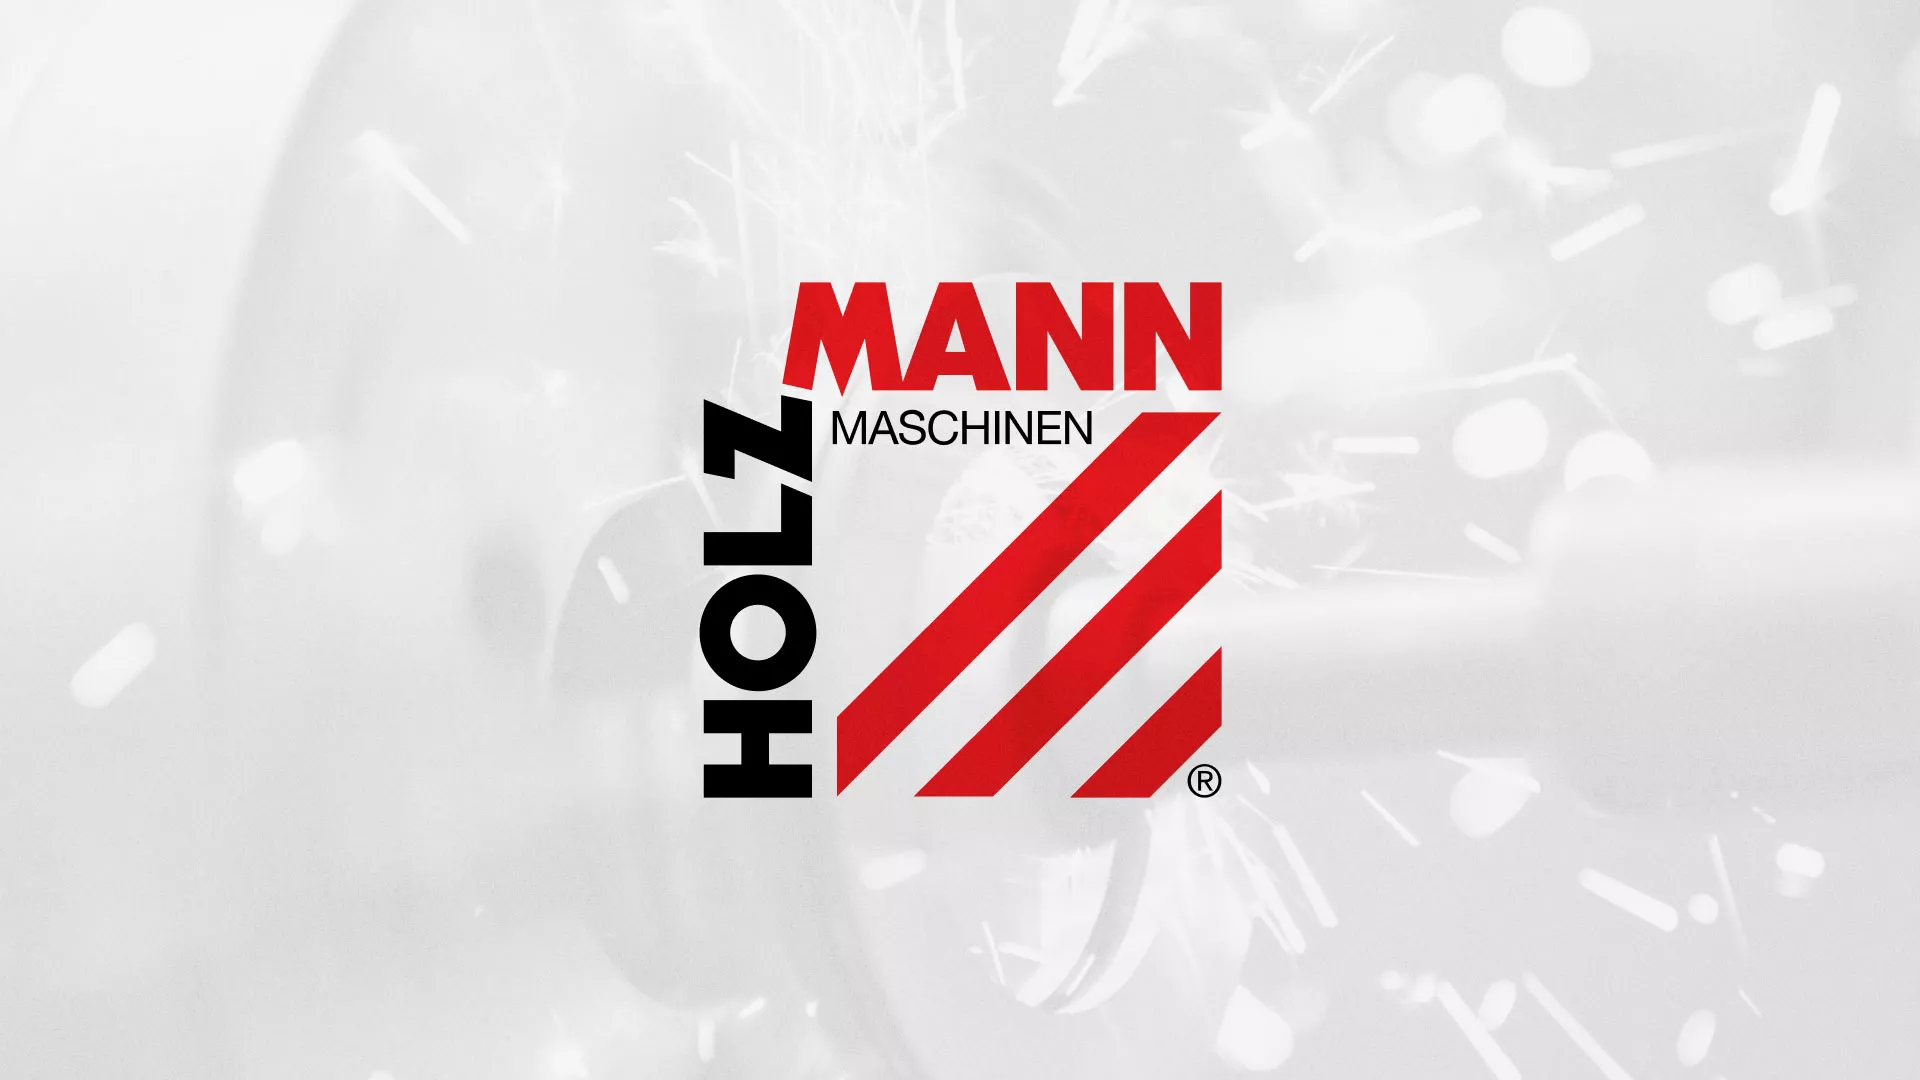 Создание сайта компании «HOLZMANN Maschinen GmbH» в Велиже